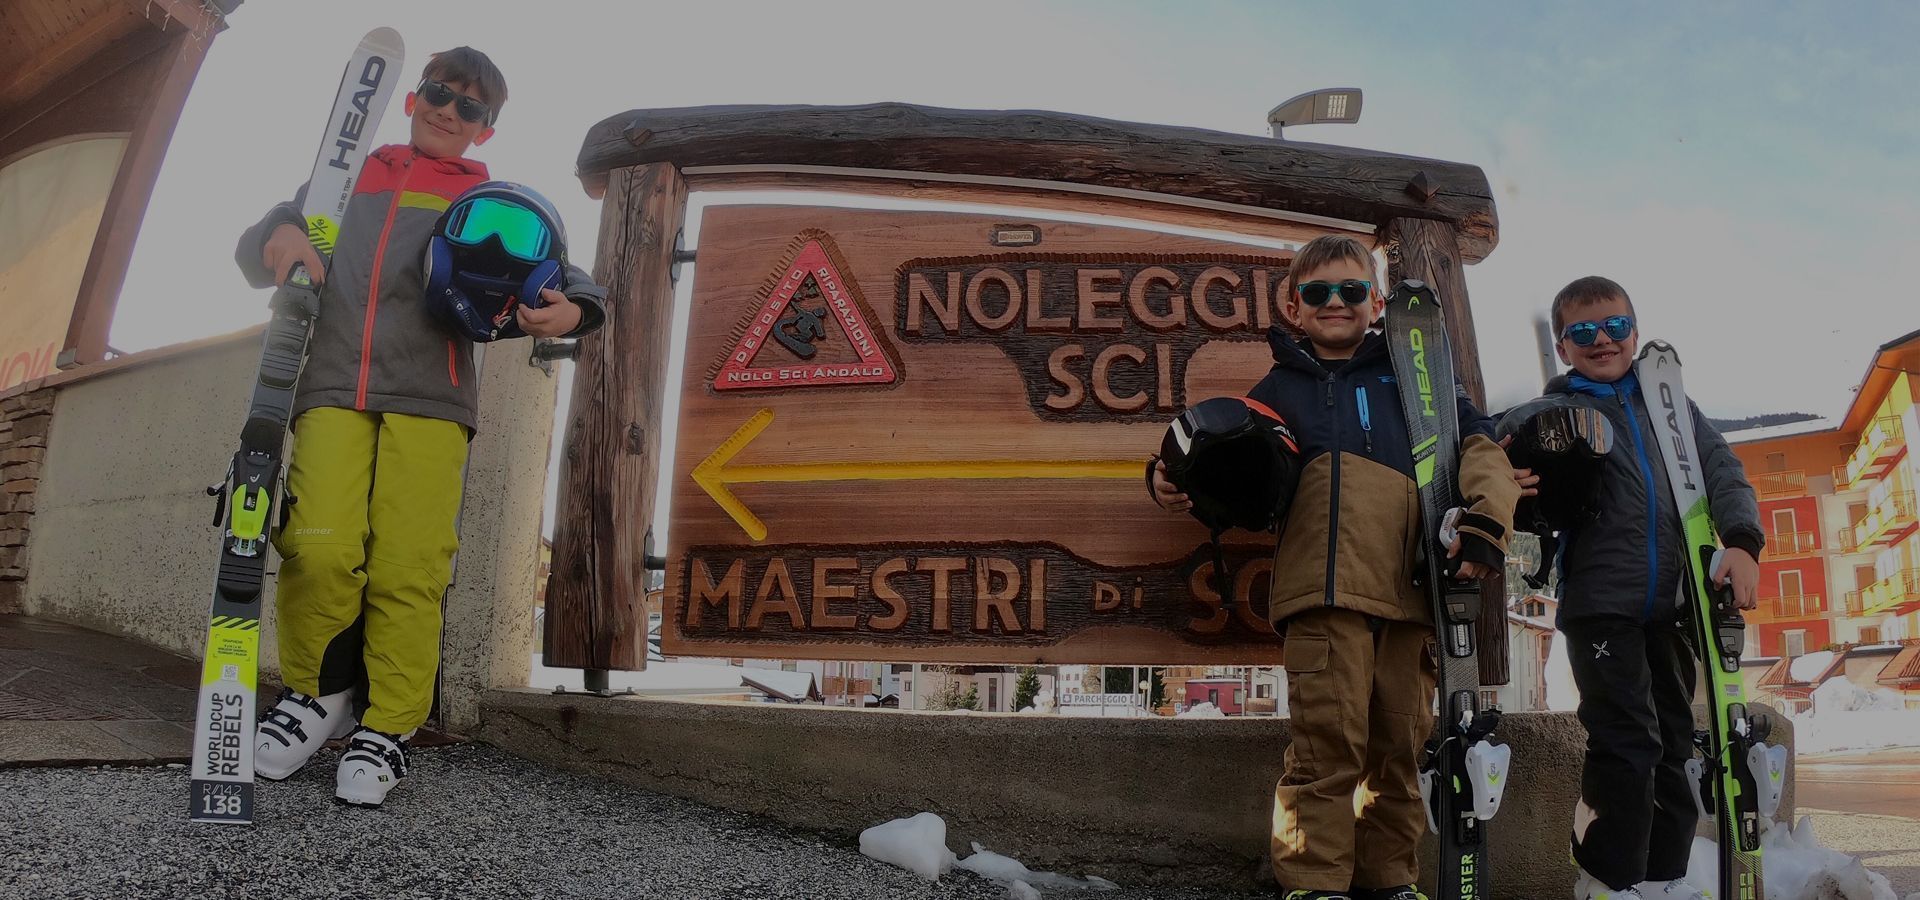 Bambini felici con gli sci noleggiati da Noleggio sci Andalo 